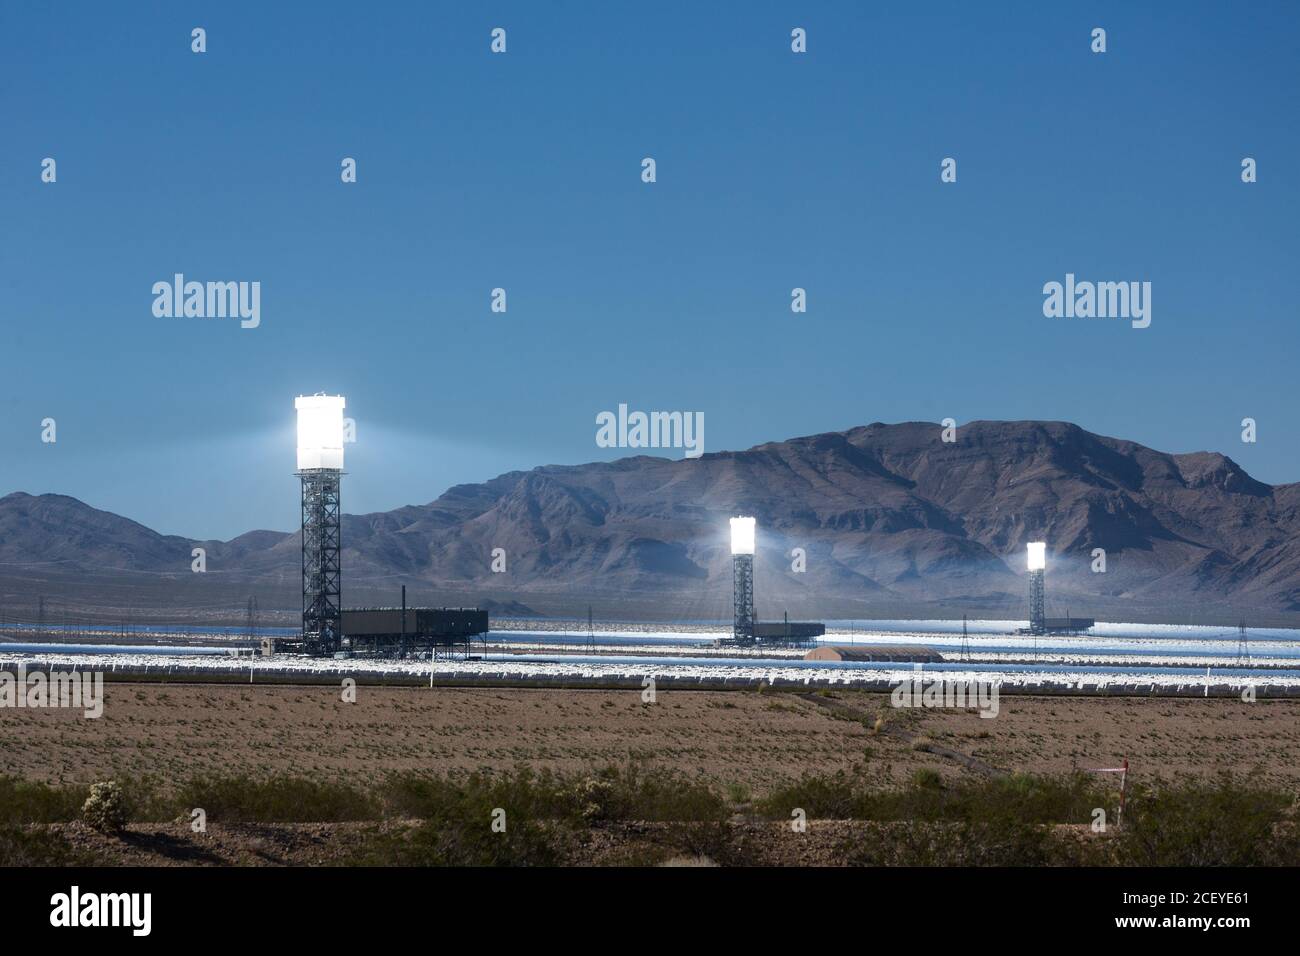 La planta de energía solar de Ivanpah, una planta termal solar concentrada en el desierto de Mojave cerca de Ivanpah, California y Primm, Nevada, es una de las plantas Foto de stock